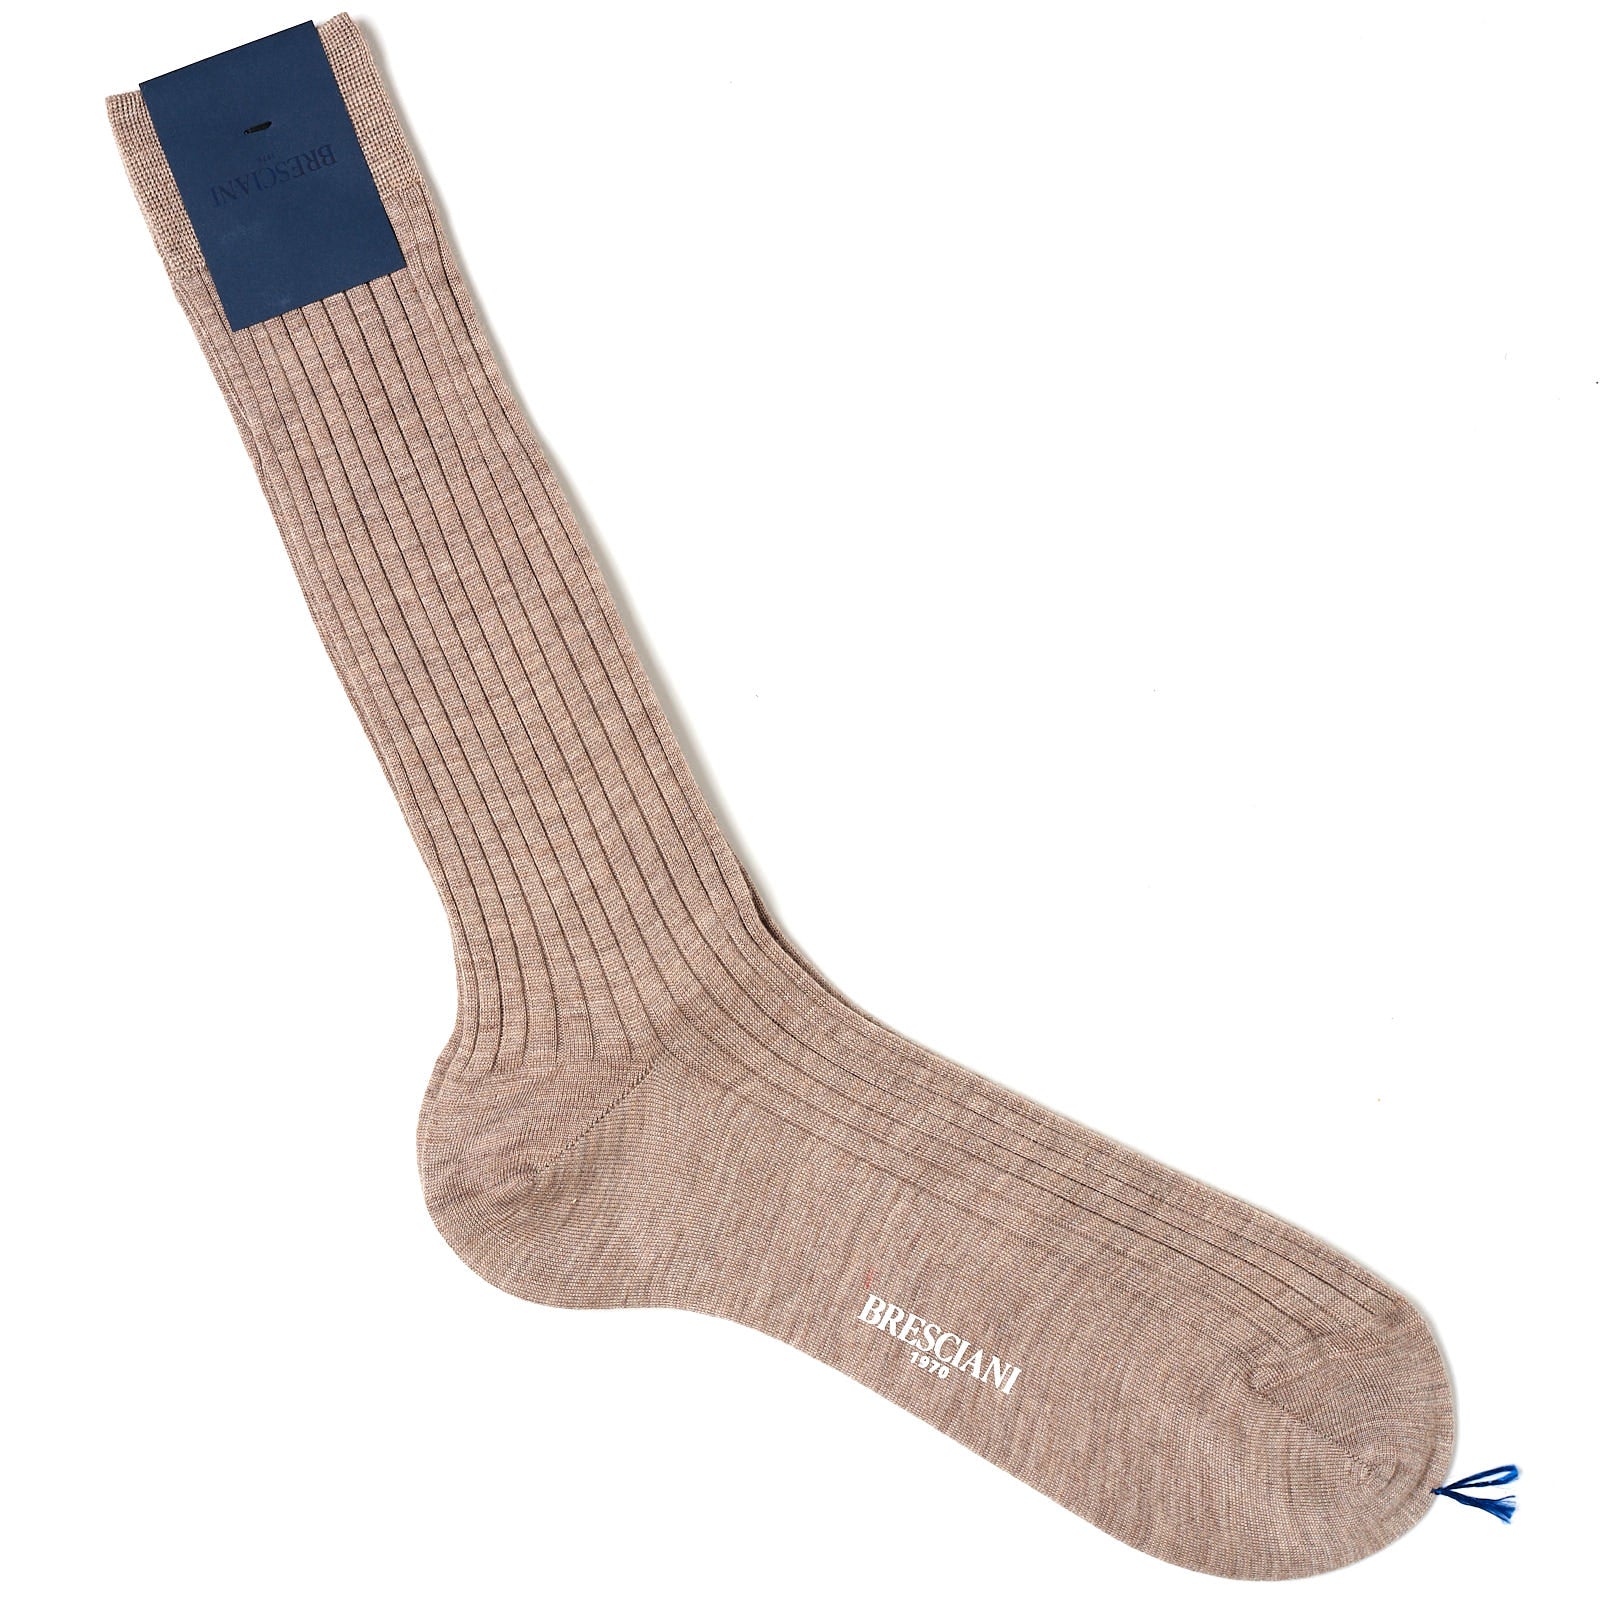 BRESCIANI Luxury Collection "Quirinale" Cashmere-Silk Mid Calf Length Socks M-L